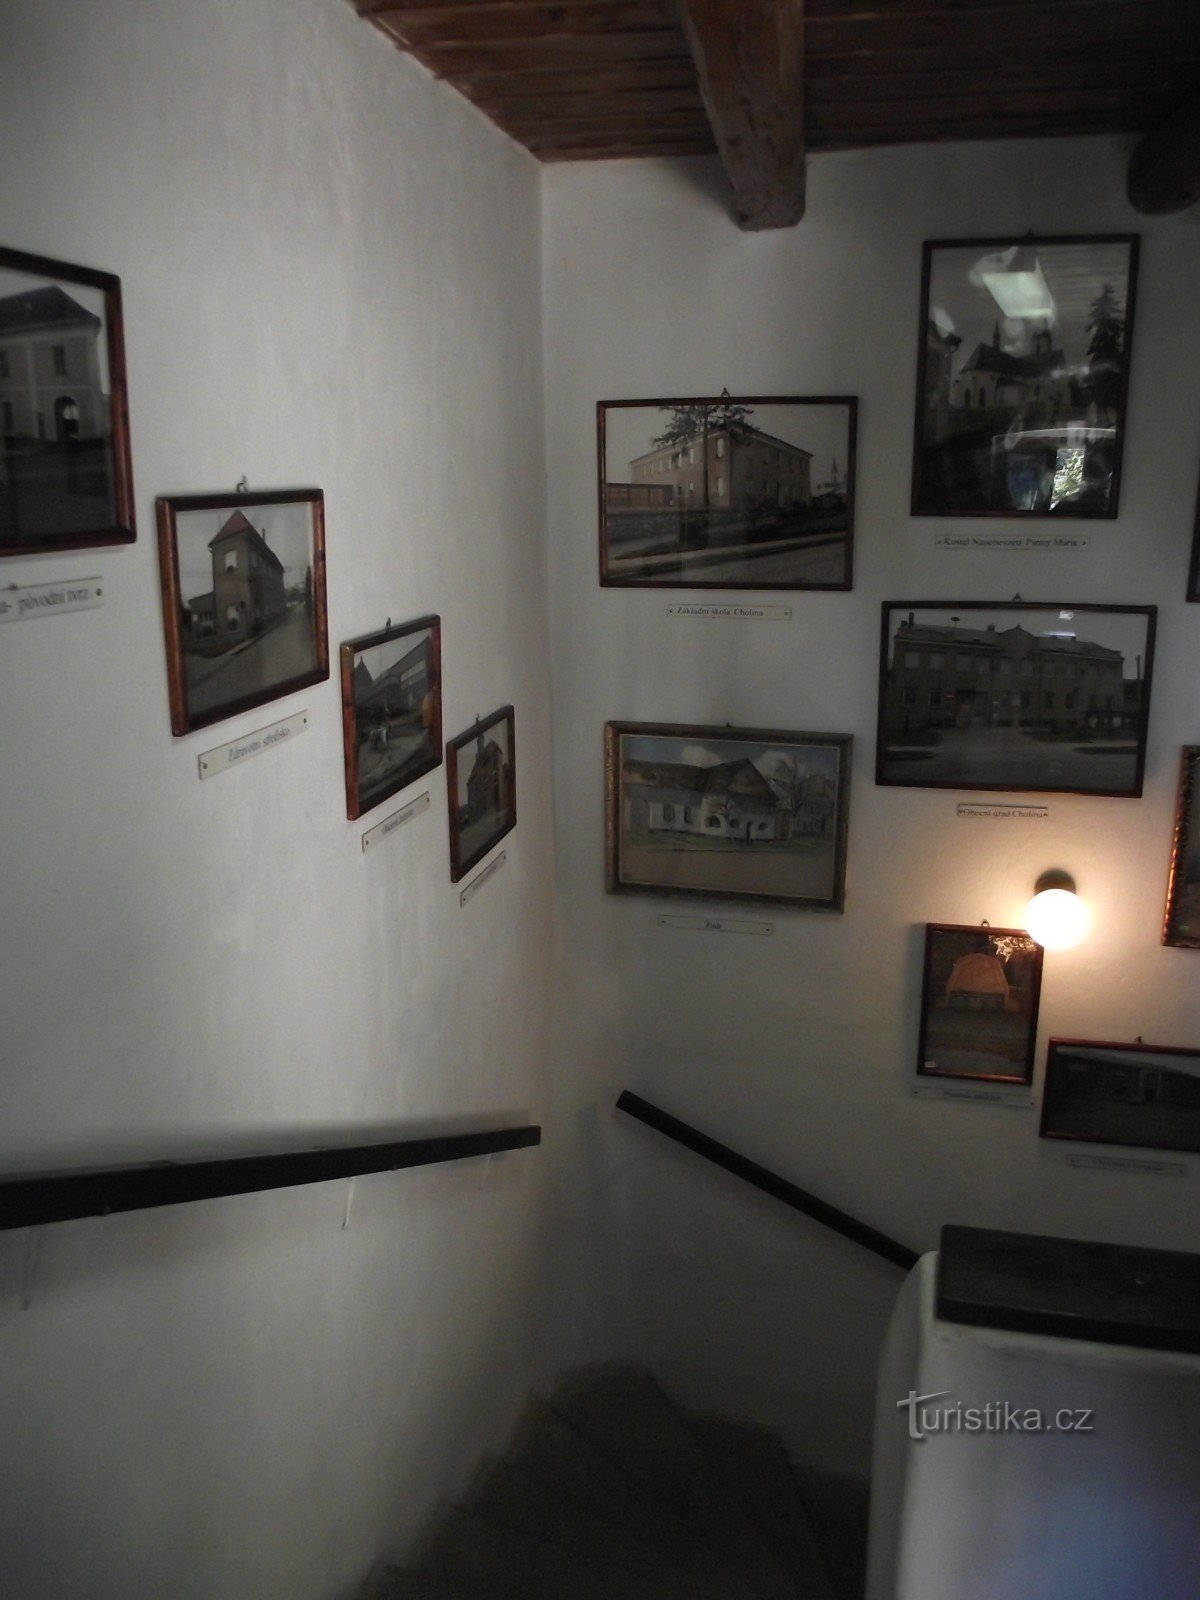 σκάλες για το μουσείο